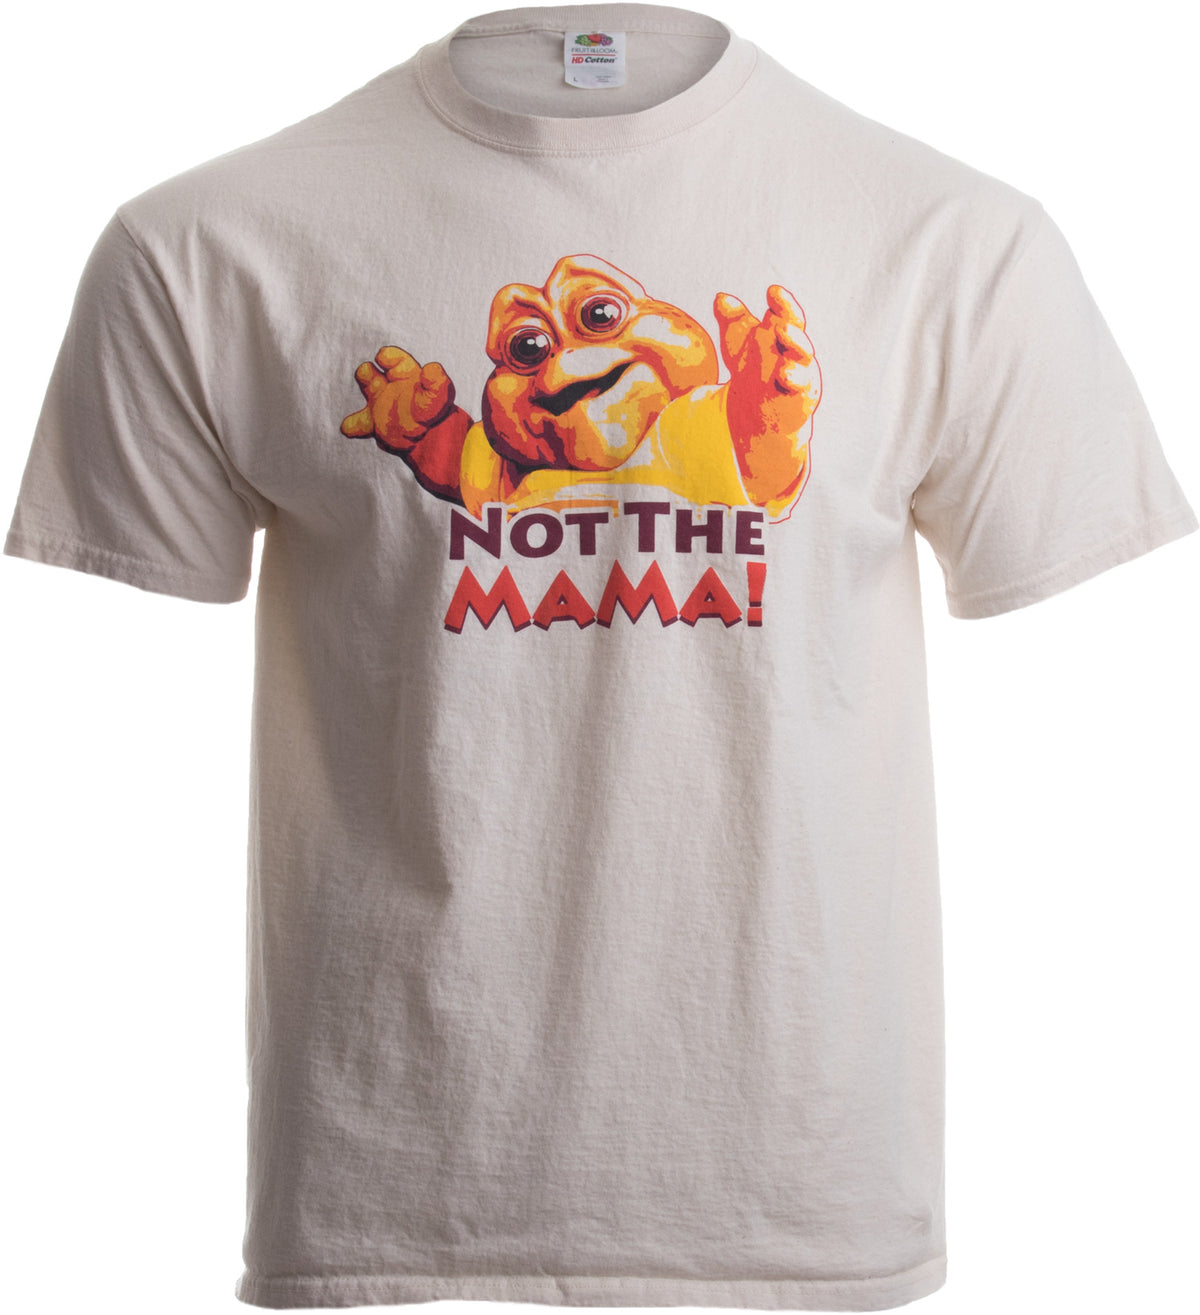 NOT THE MAMA! Unisex T-shirt / 90s Dinosaur TV Tribute Shirt